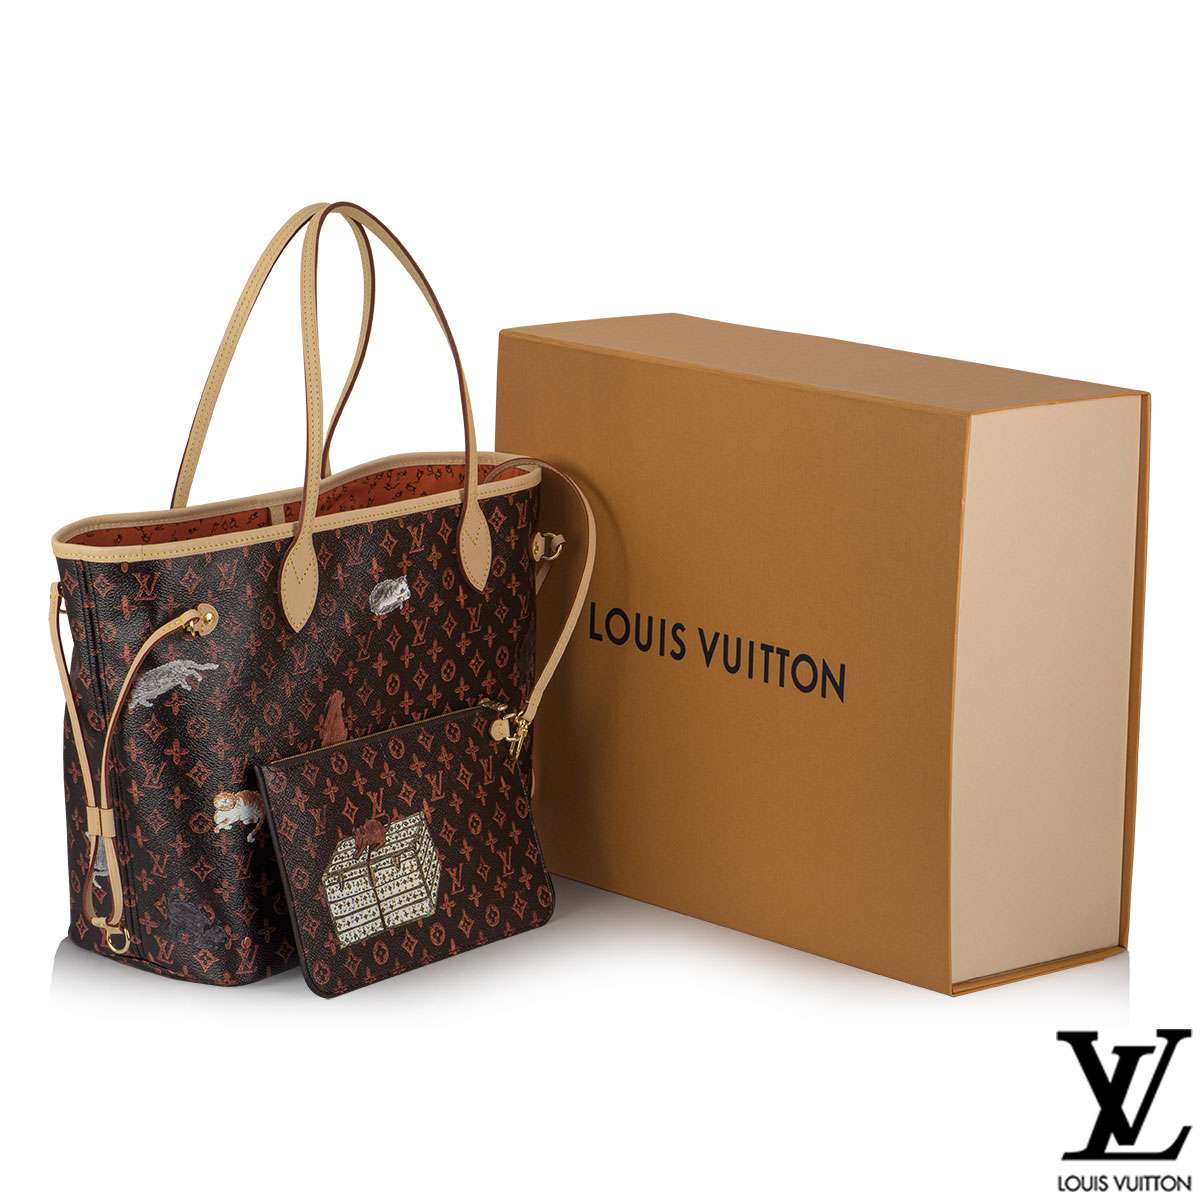 Louis Vuitton x Grace Coddington Catogram Capsule Collection